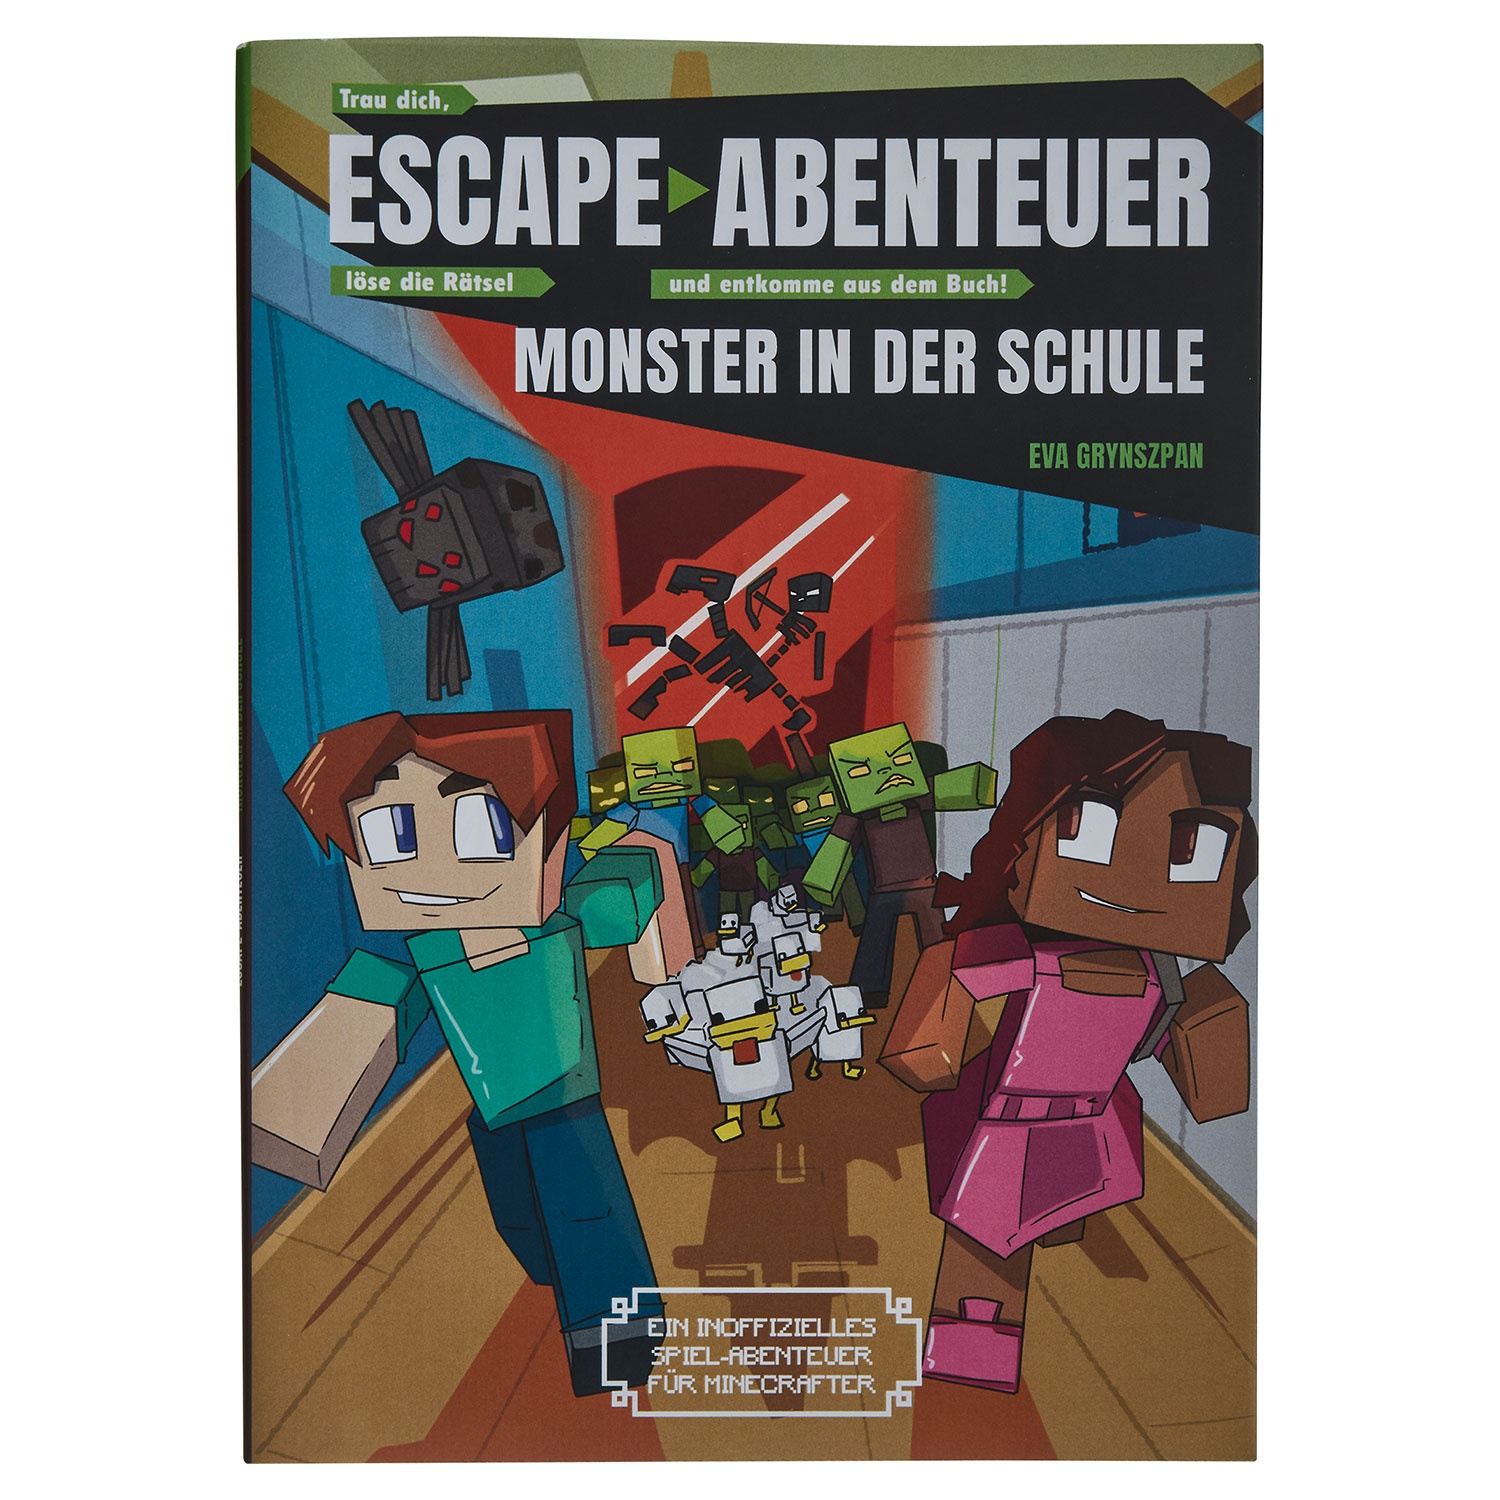 Rätselbuch oder Escape-Abenteuer